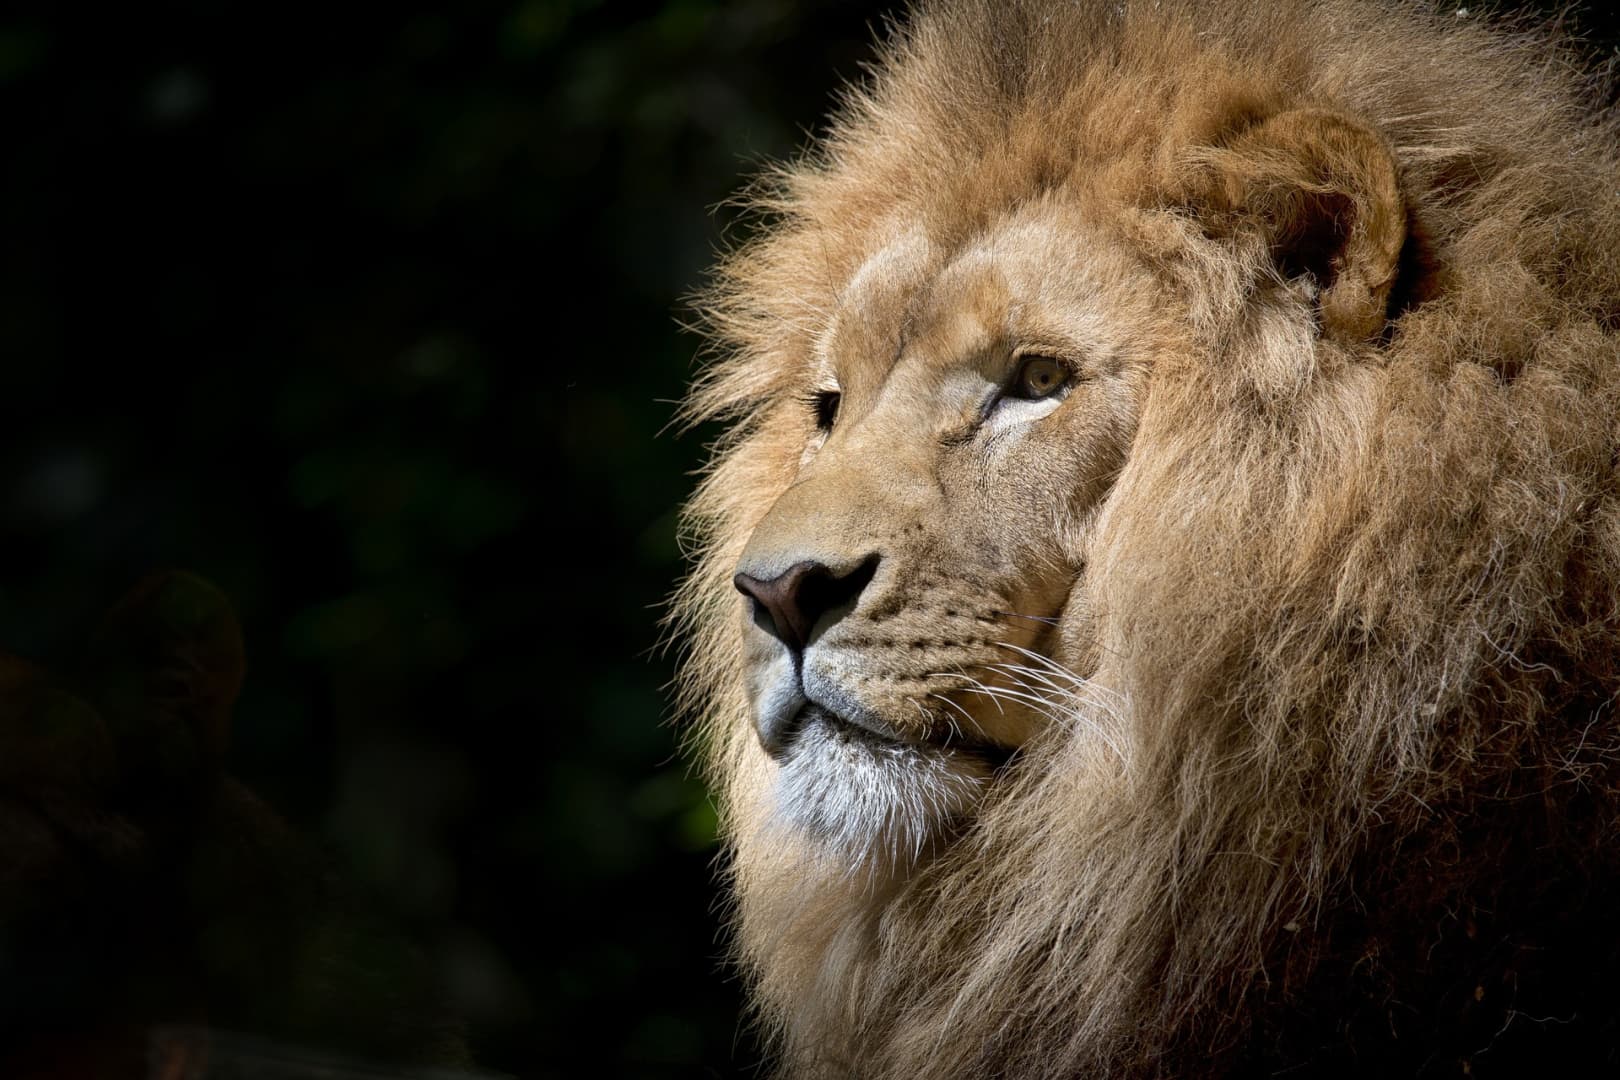 Először egy emberi végtagra bukkantak, majd az oroszlán alatt megtalálták az állatkert tulajdonosának holttestét